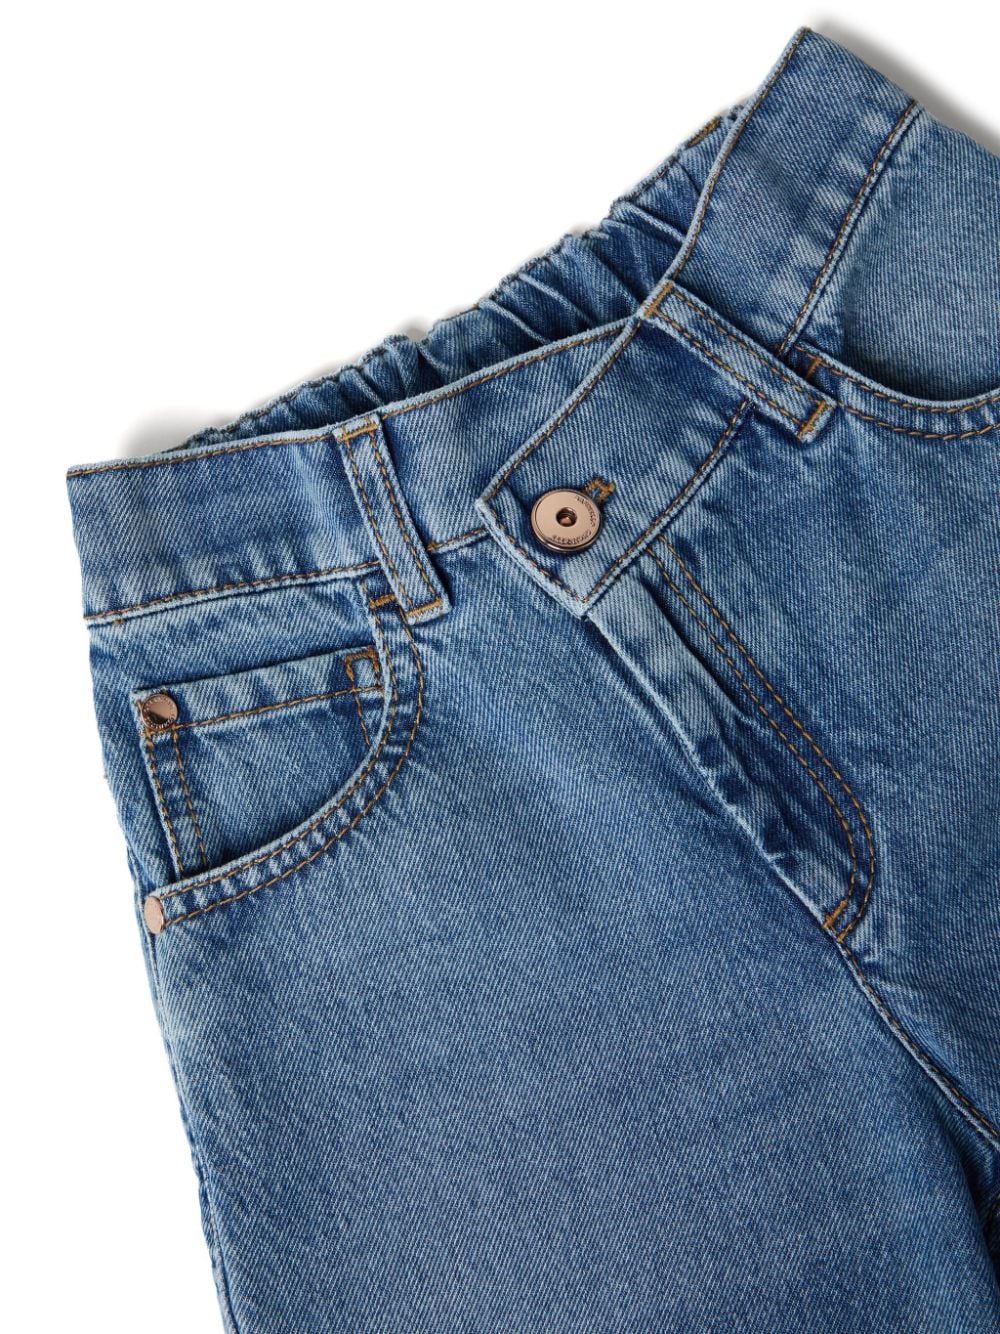 Jeans con dettaglio chiusura - Rubino Kids